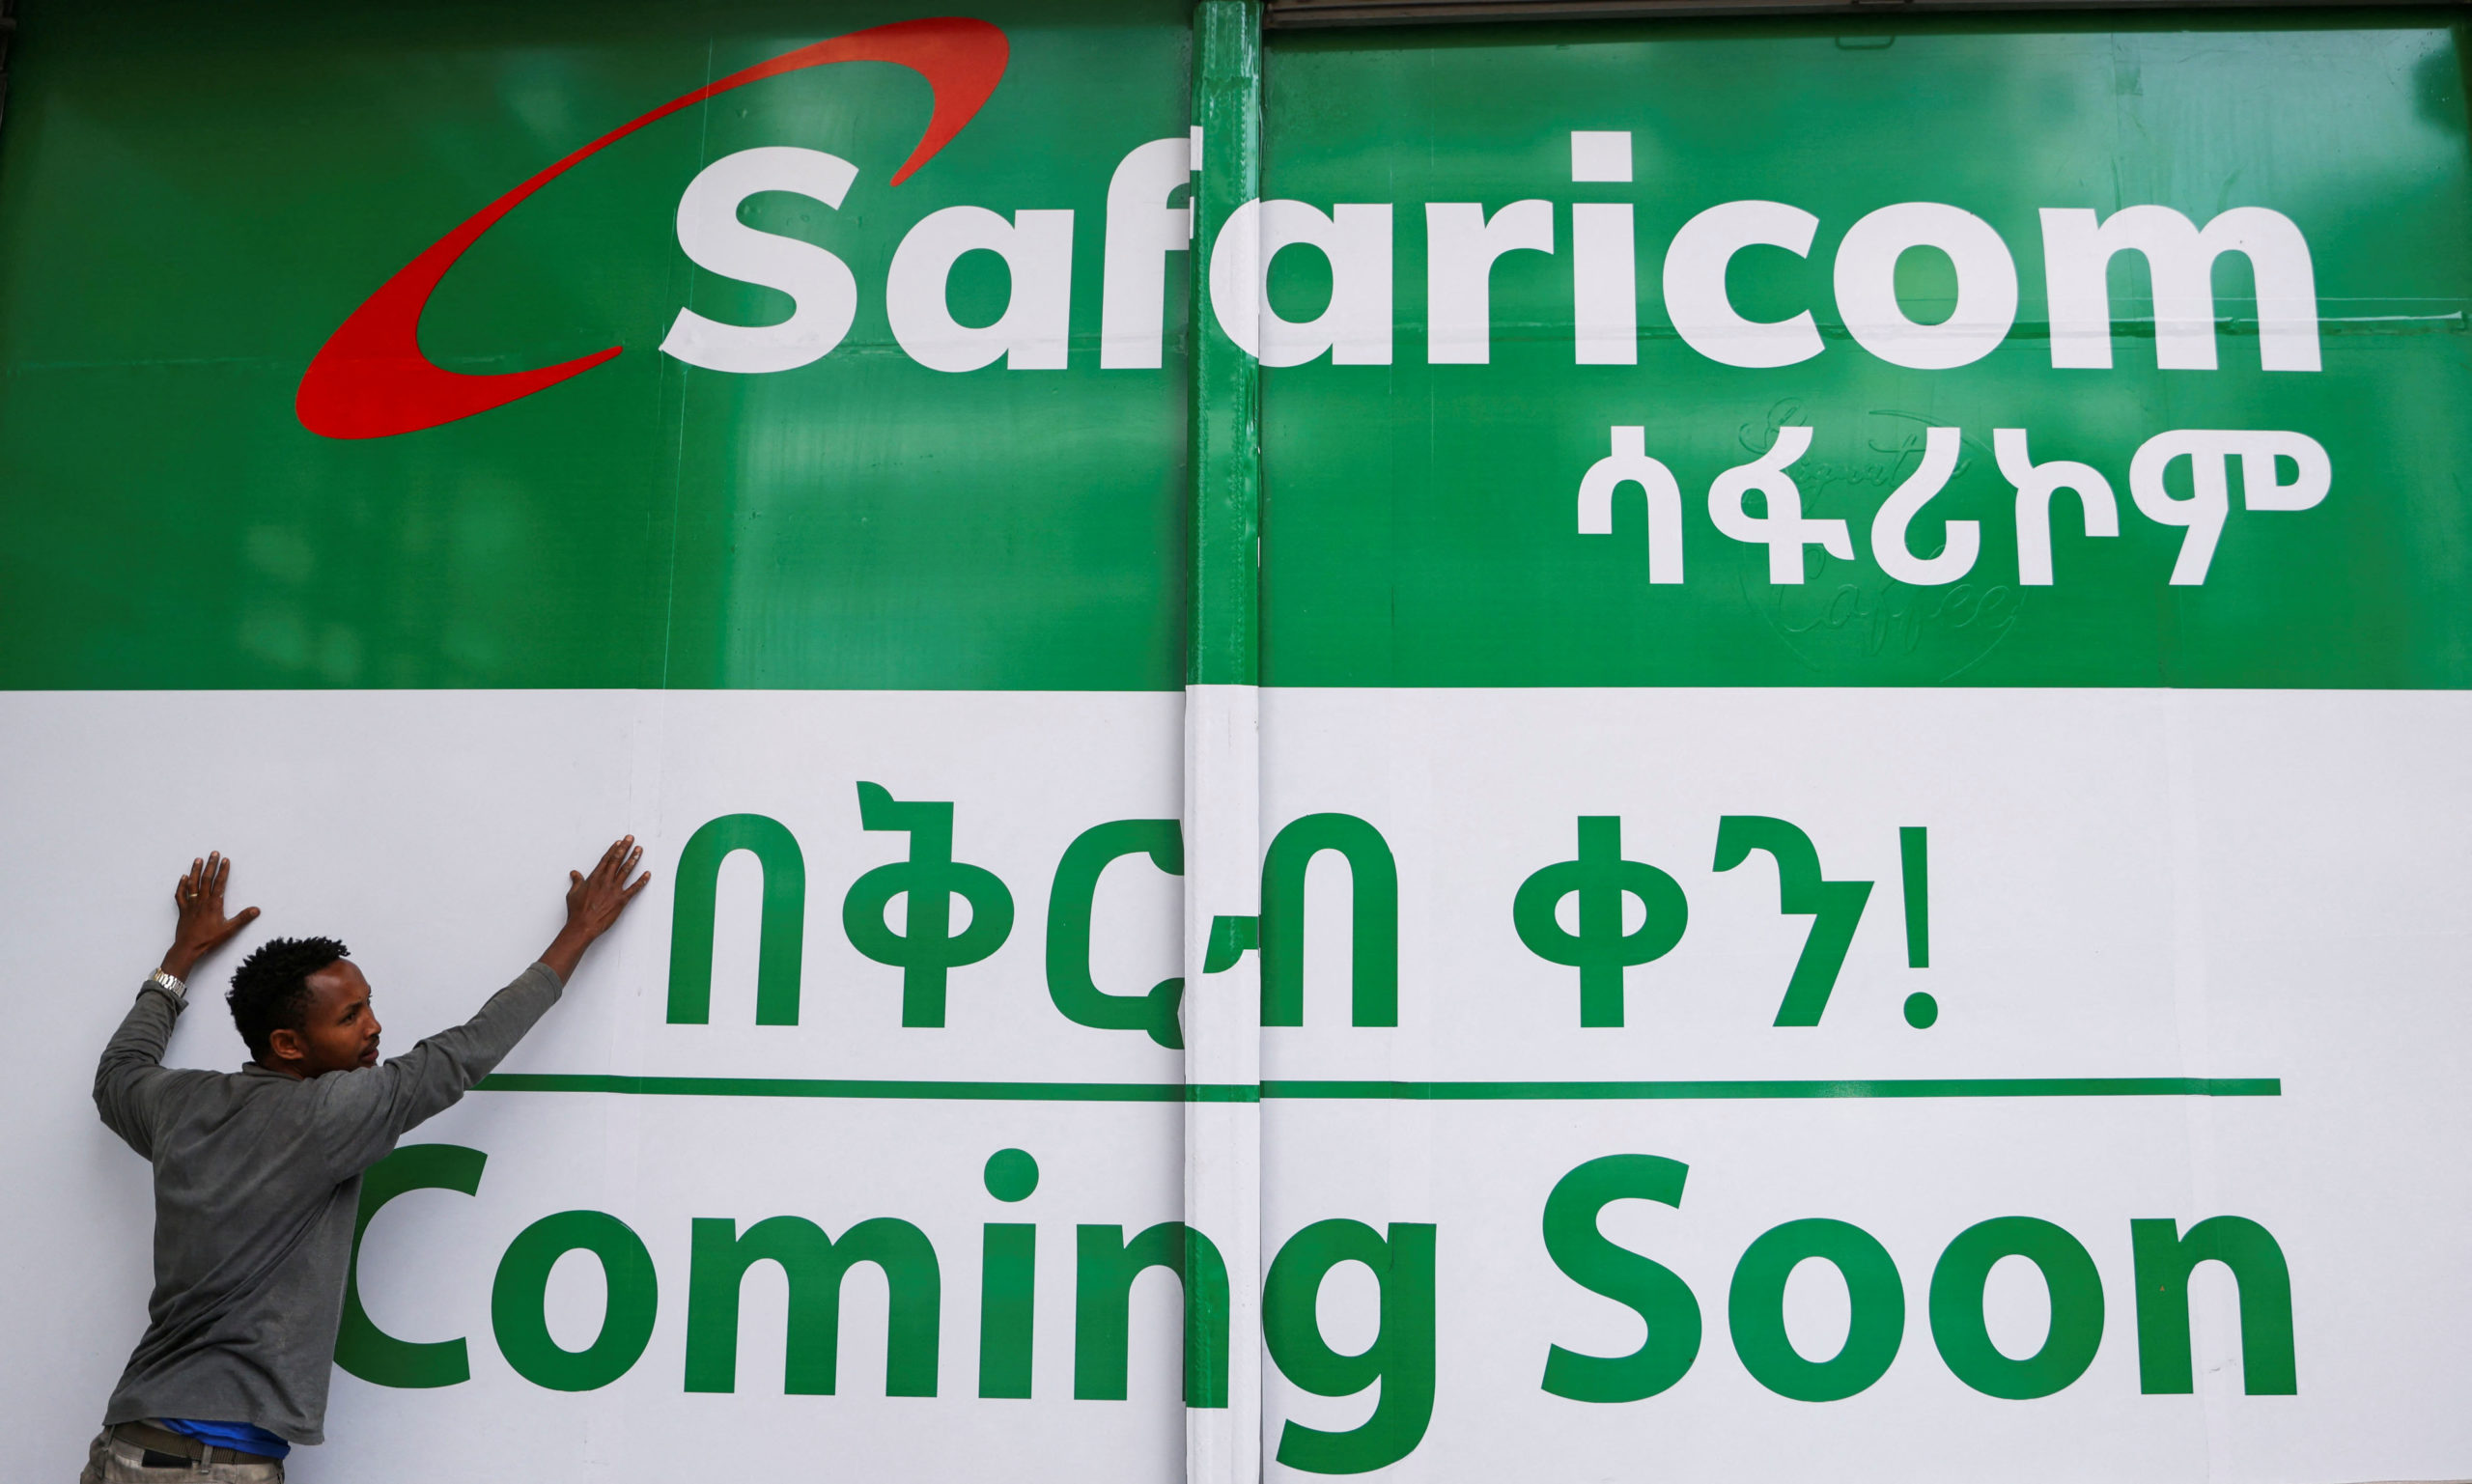 Safaricom ethiopia